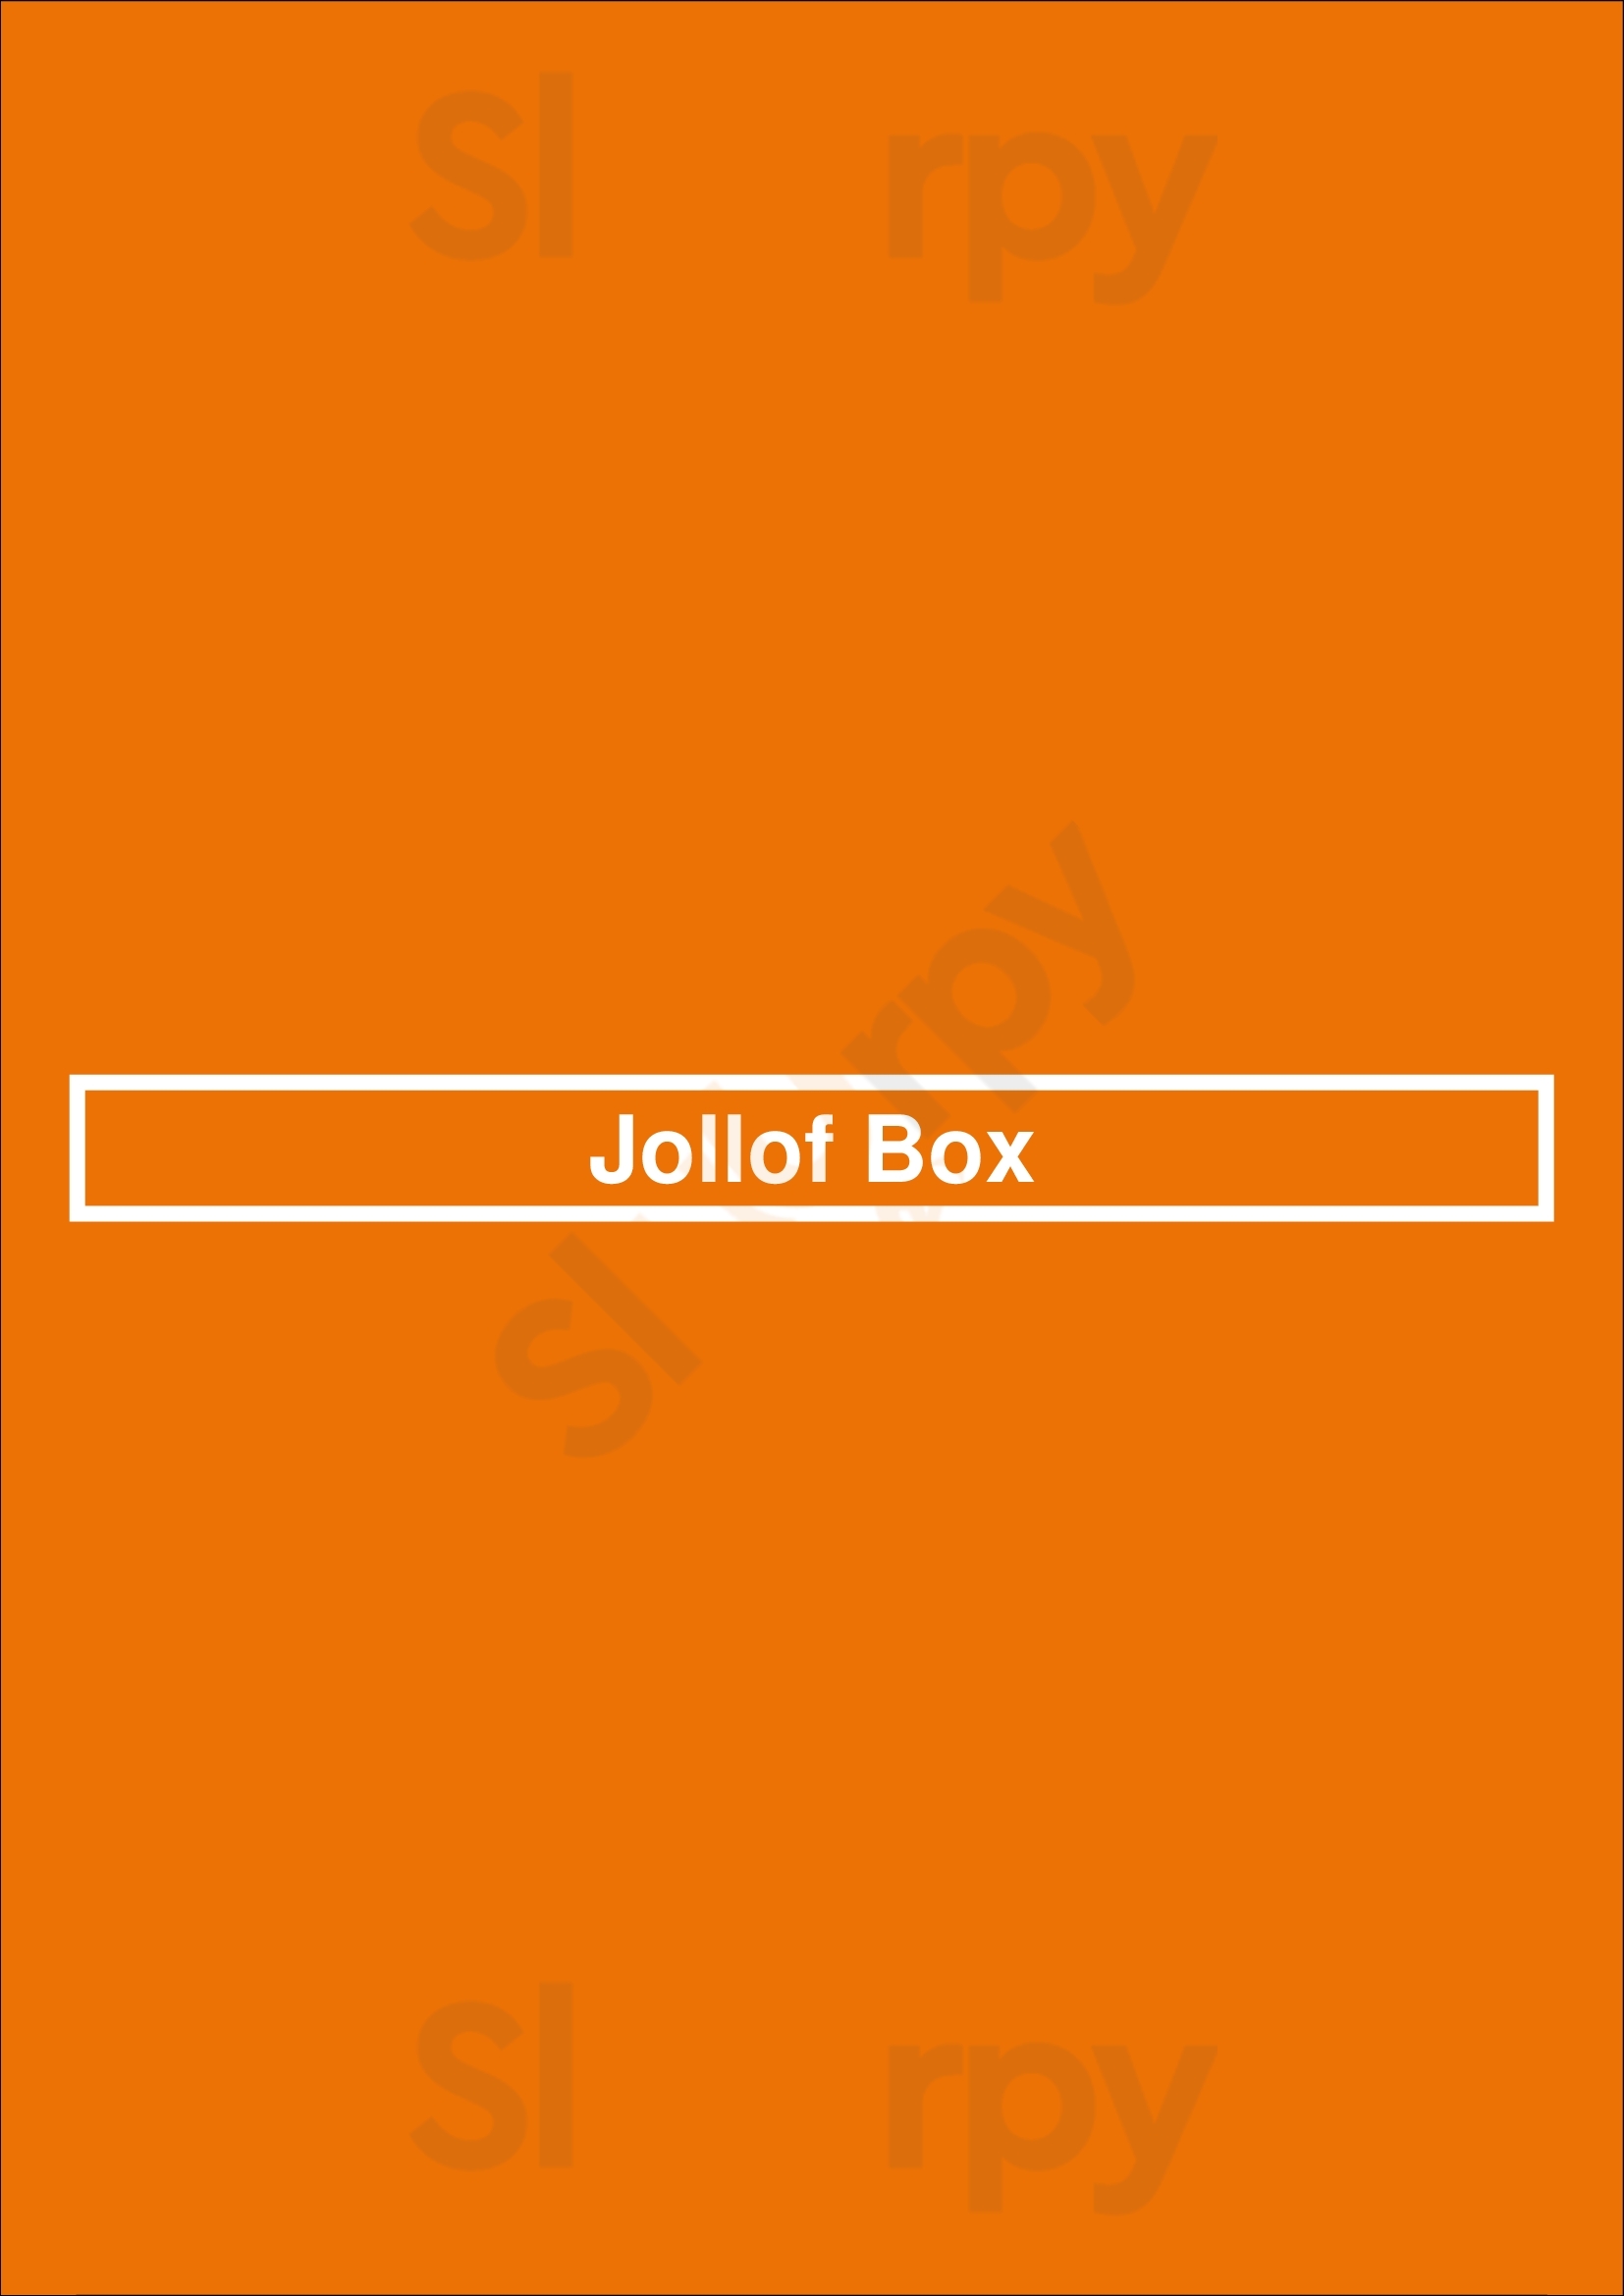 Jollof Box London Menu - 1